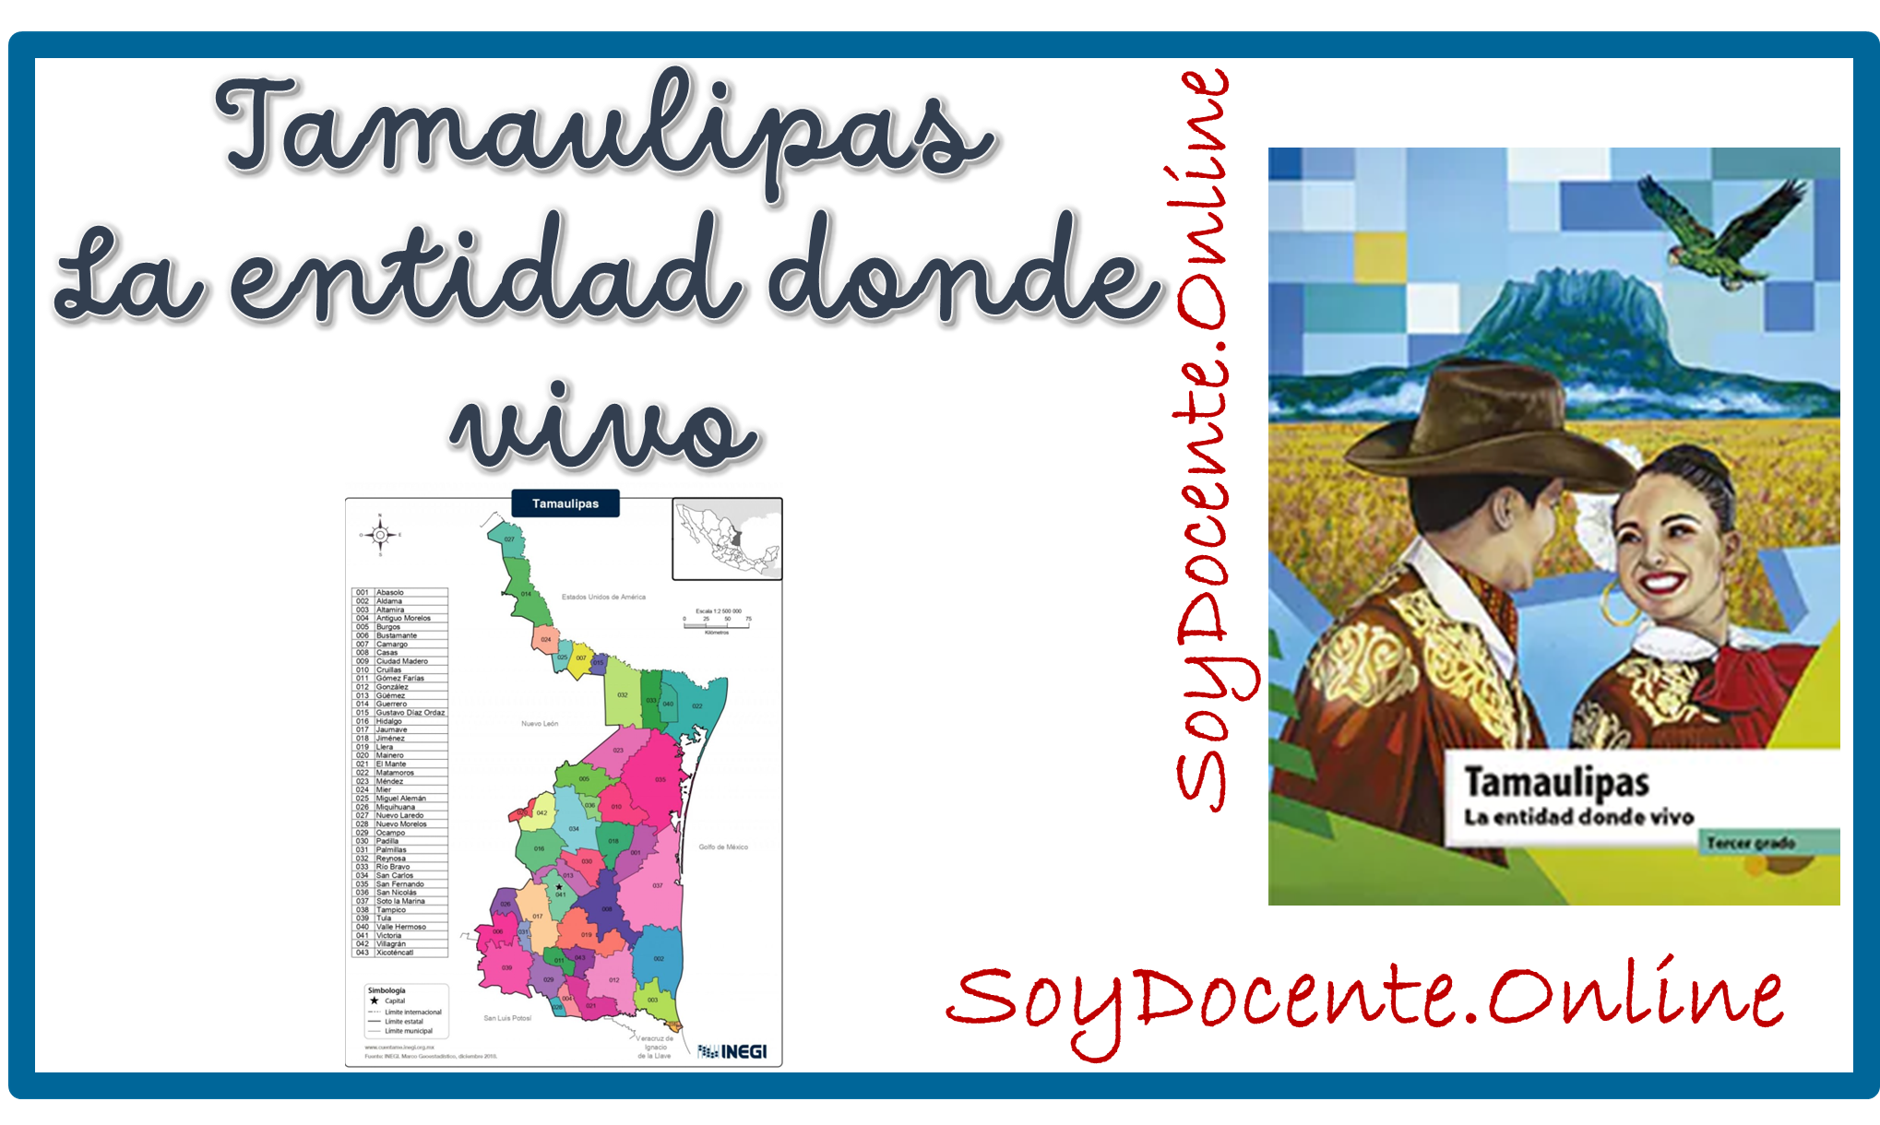 Descarga el Libro de Tamaulipas La entidad donde vivo tercer grado de Primaria, por la SEP, distribuido por CONALITEG. En PDF